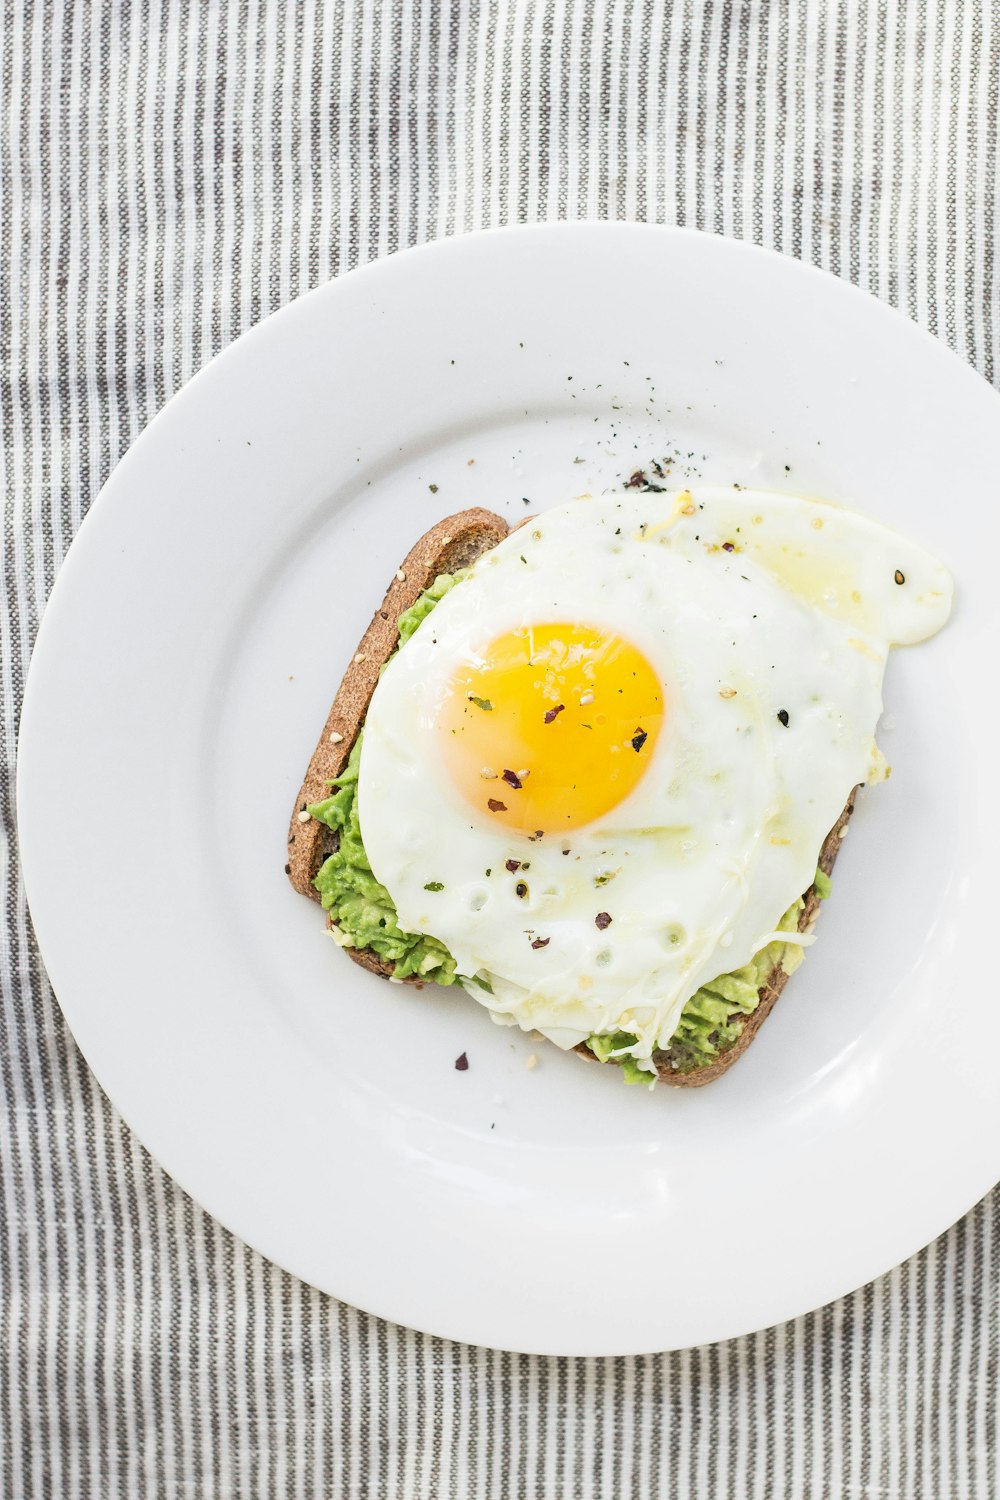 sunny side up egg, lettuce, bread on white ceramic plate